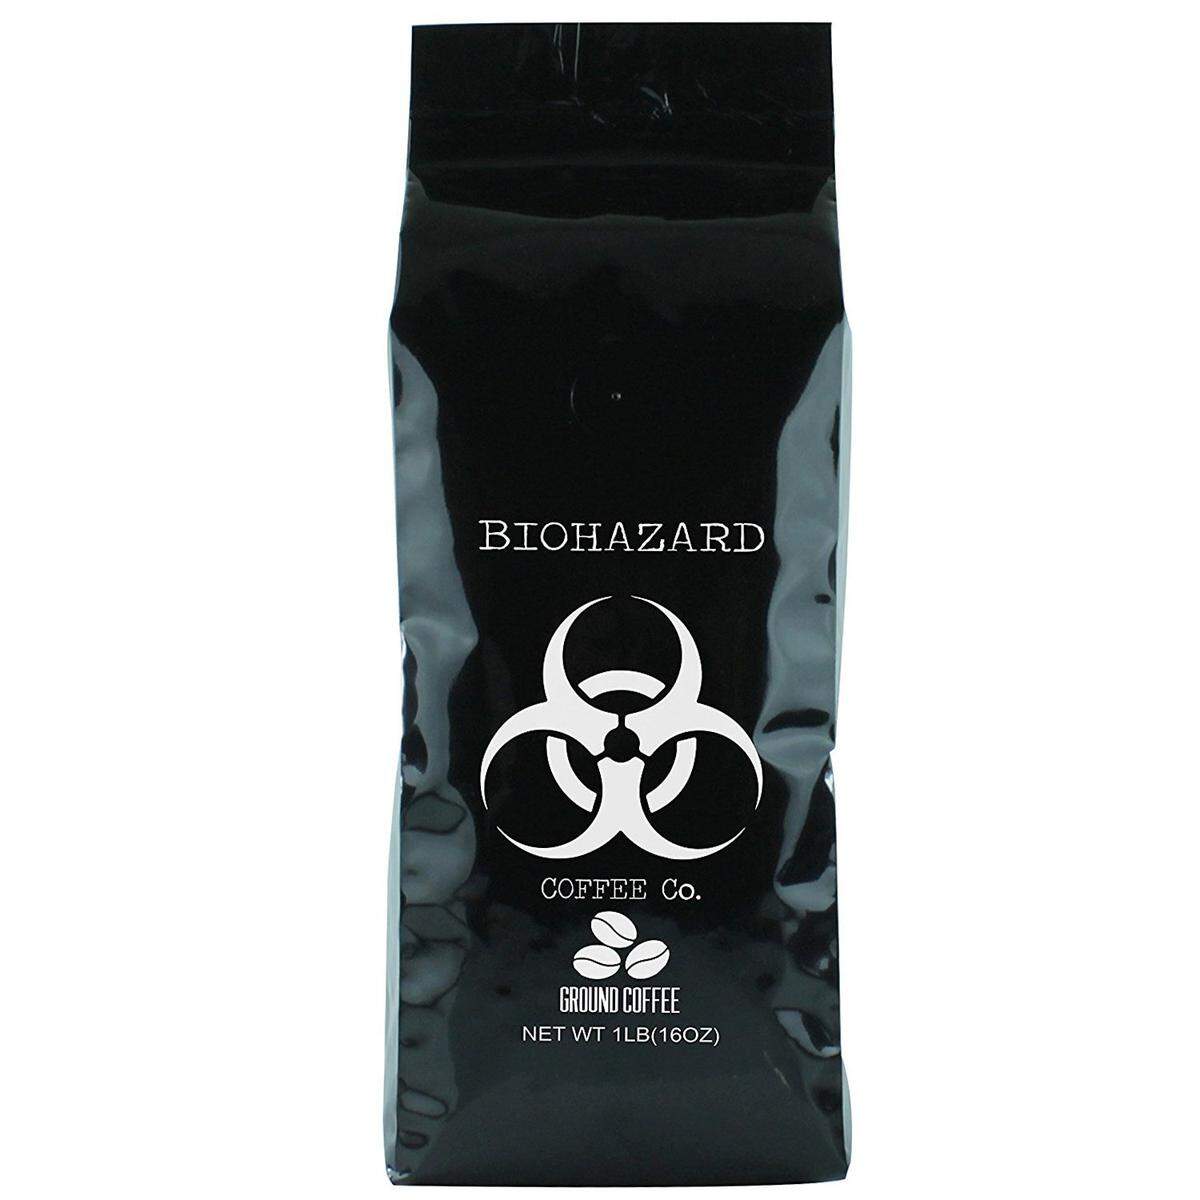 Dramatischer Name, dramatische Werte: "Biohazard" heißt diese Kaffeemischung aus New York City, die aufgebrüht mit 250 Millilitern Wasser auf 457,8 Milligramm Koffein kommt.